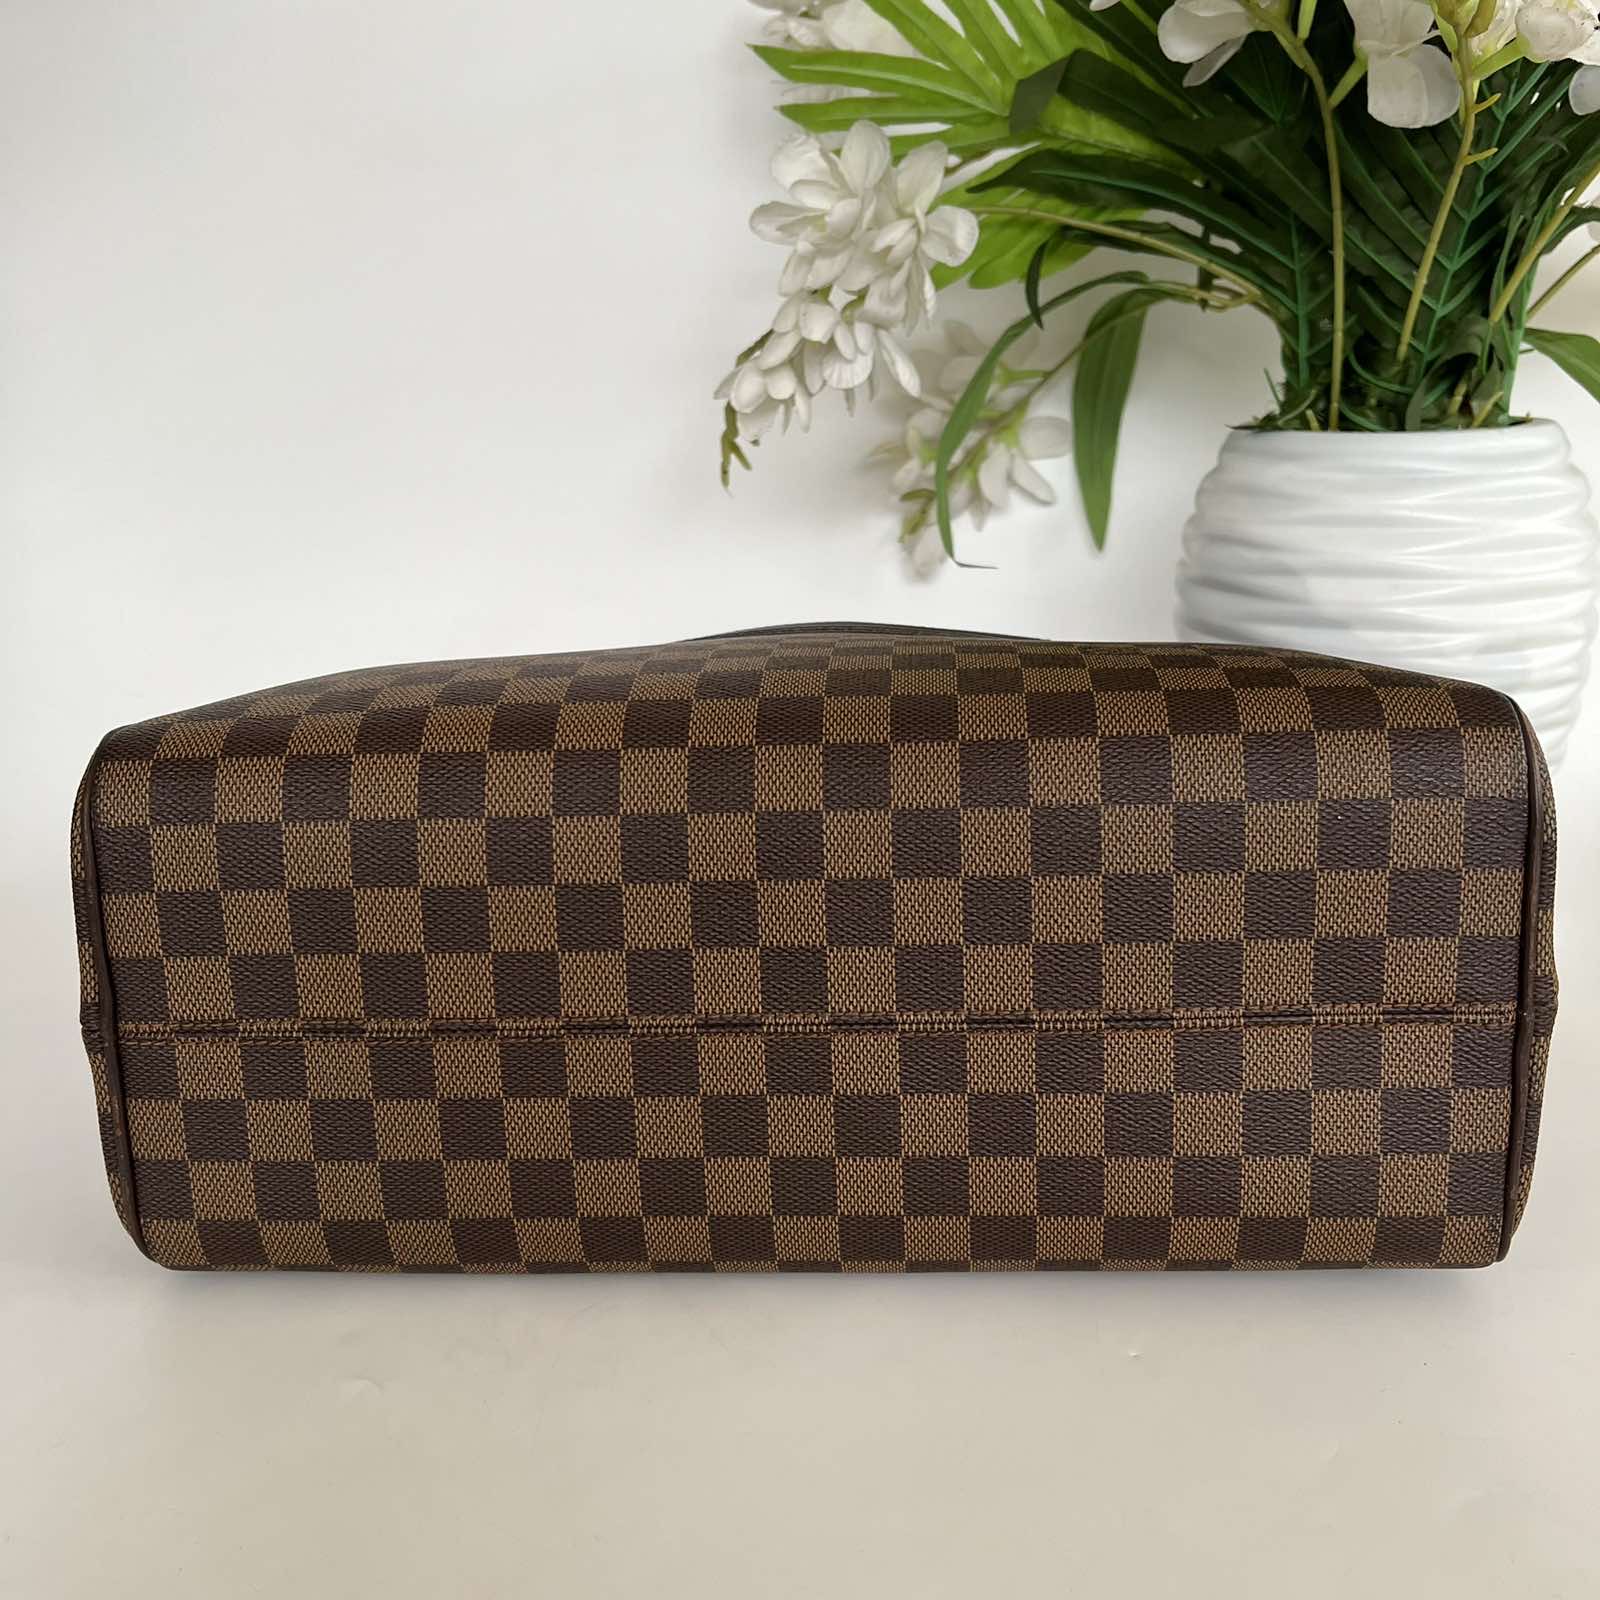 Louis Vuitton Damier Ebene Nolita Handbag. DC: SP0084. Made in